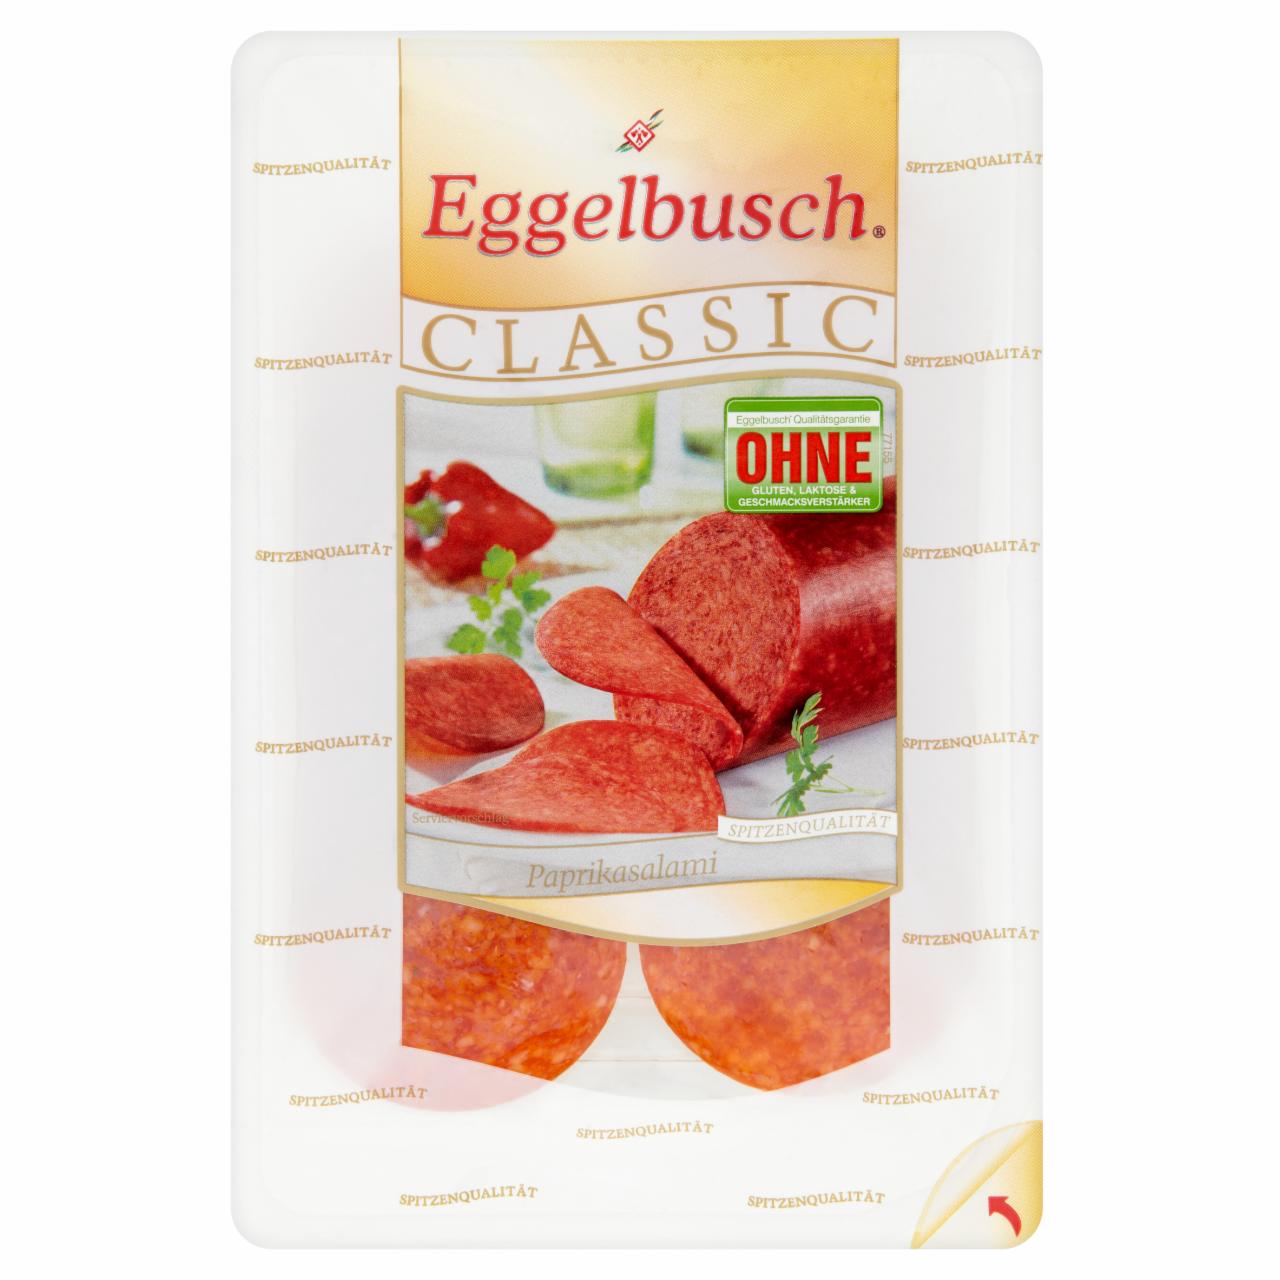 Képek - Eggelbusch Classic szeletelt német paprika szalámi 80 g